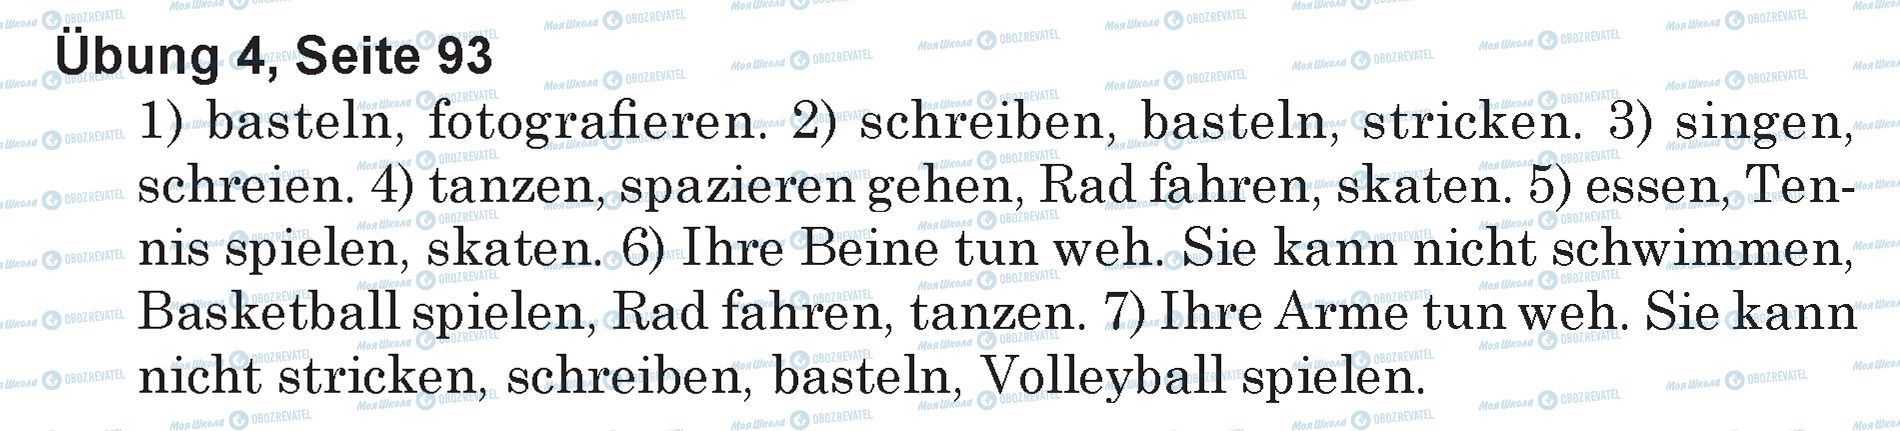 ГДЗ Німецька мова 5 клас сторінка Ubung 4, Seite 93